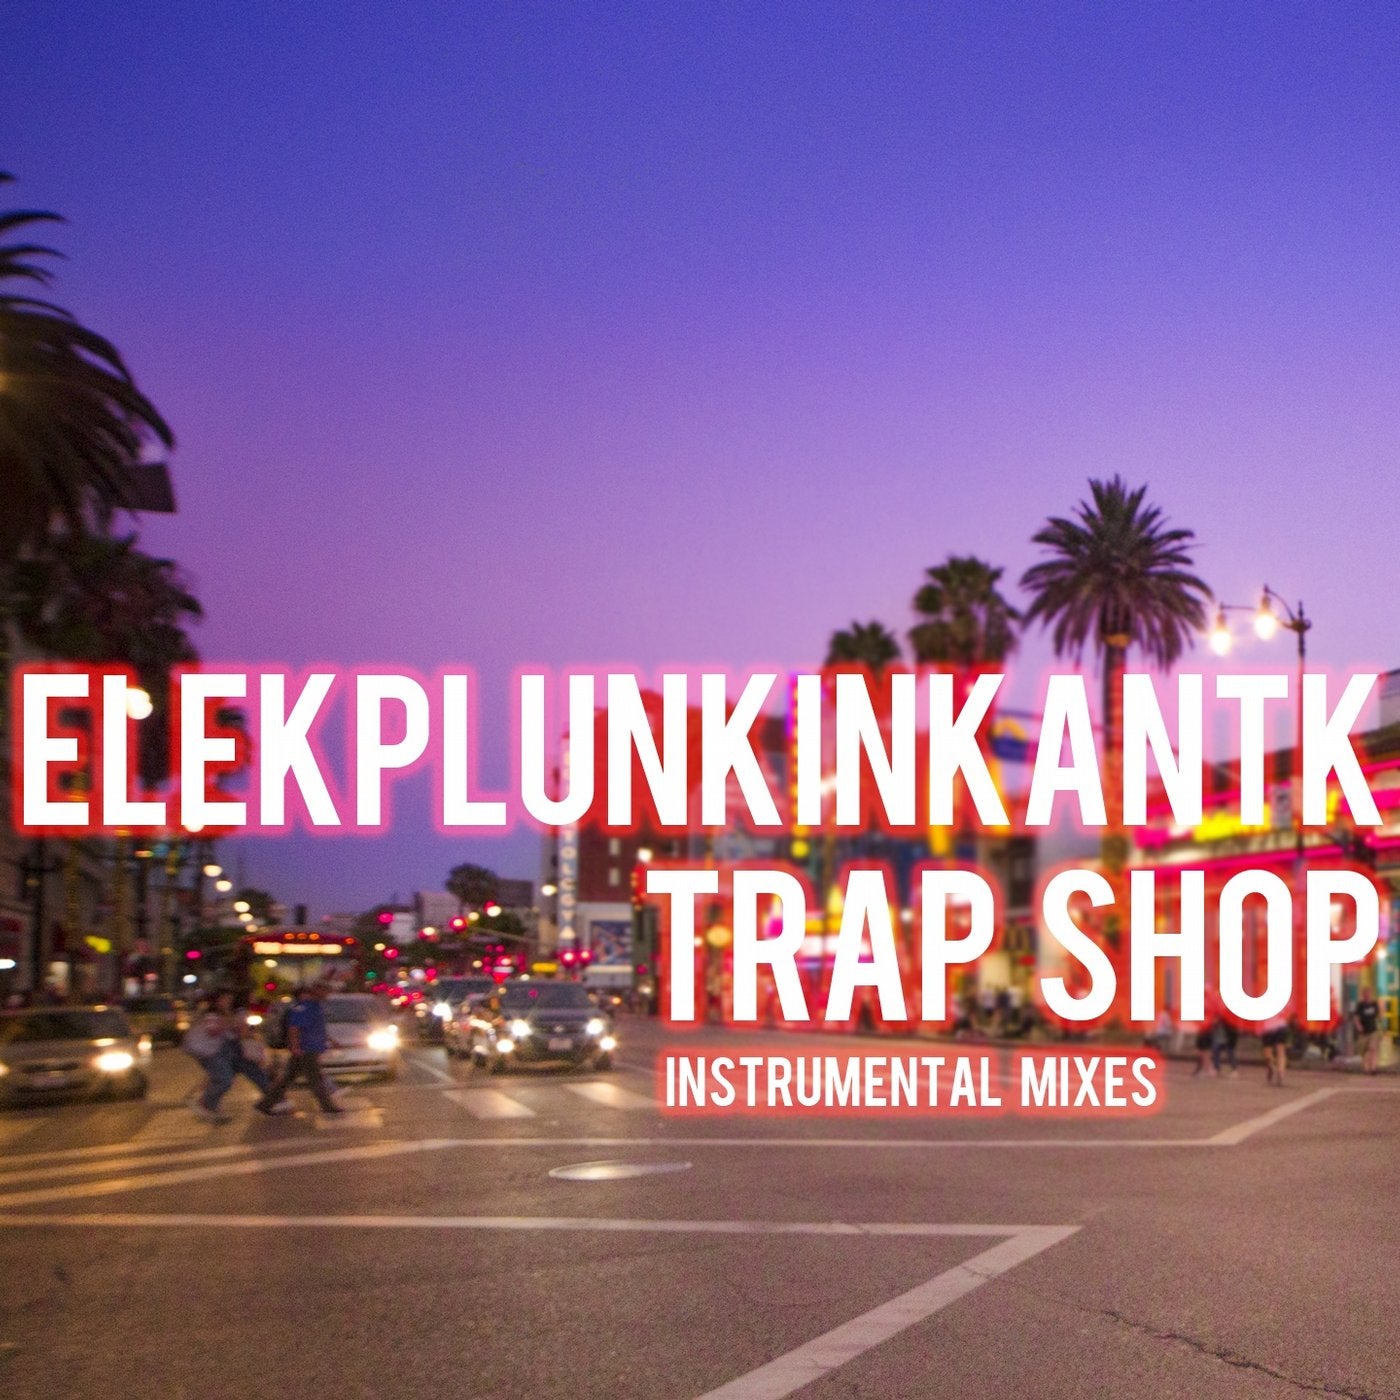 Trap Shop (Instrumental Mixes)